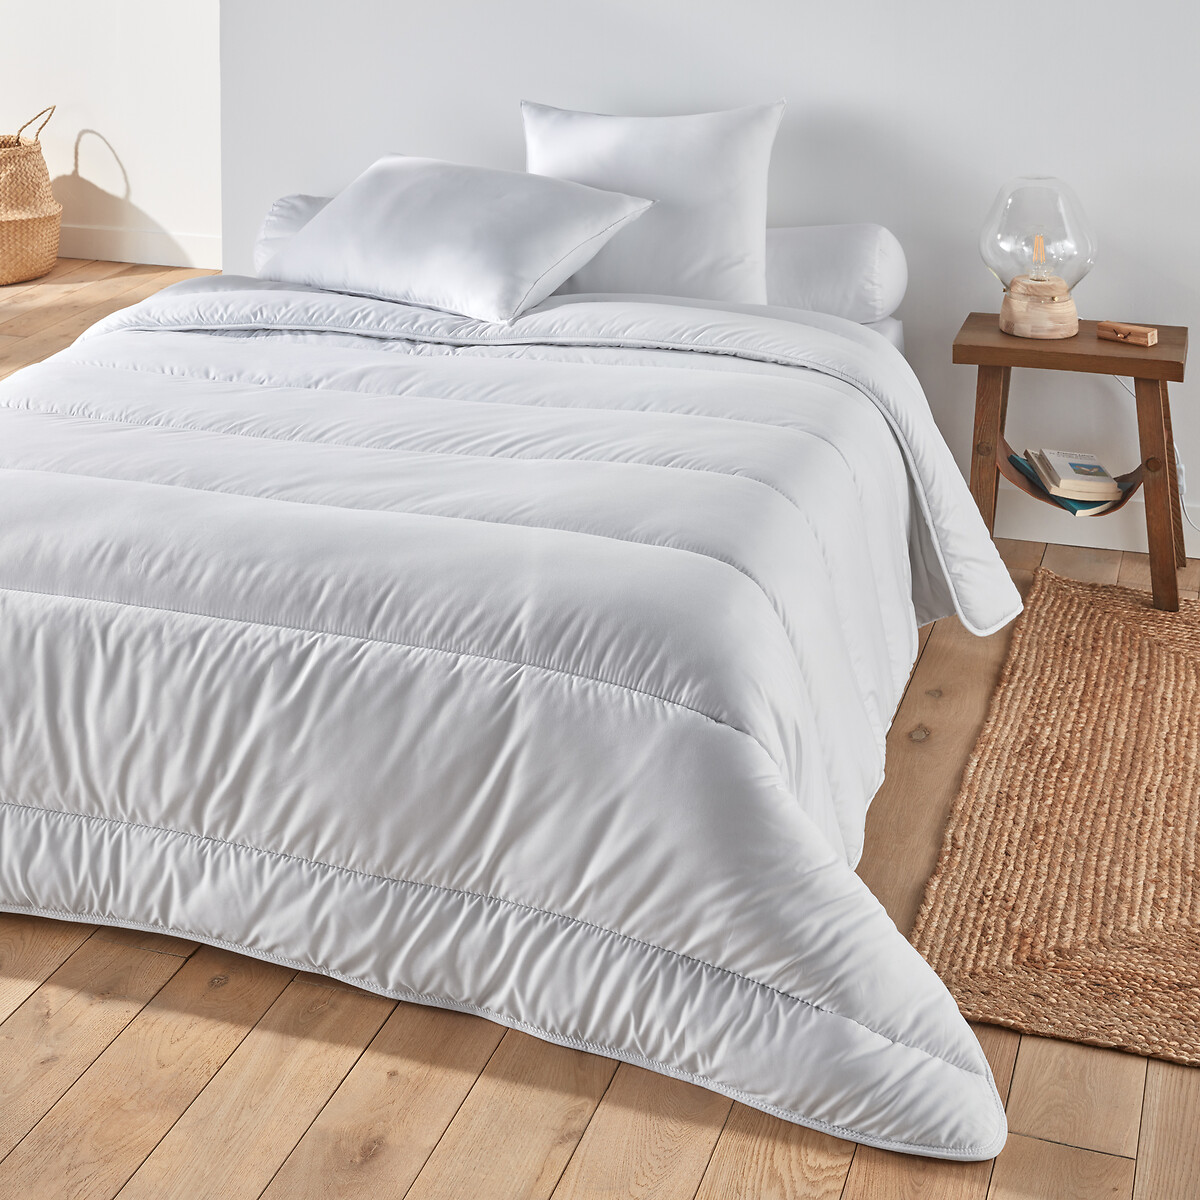 Одеяло Синтетическое с обработкой BI-OME 200 гм2 240 x 220 см белый